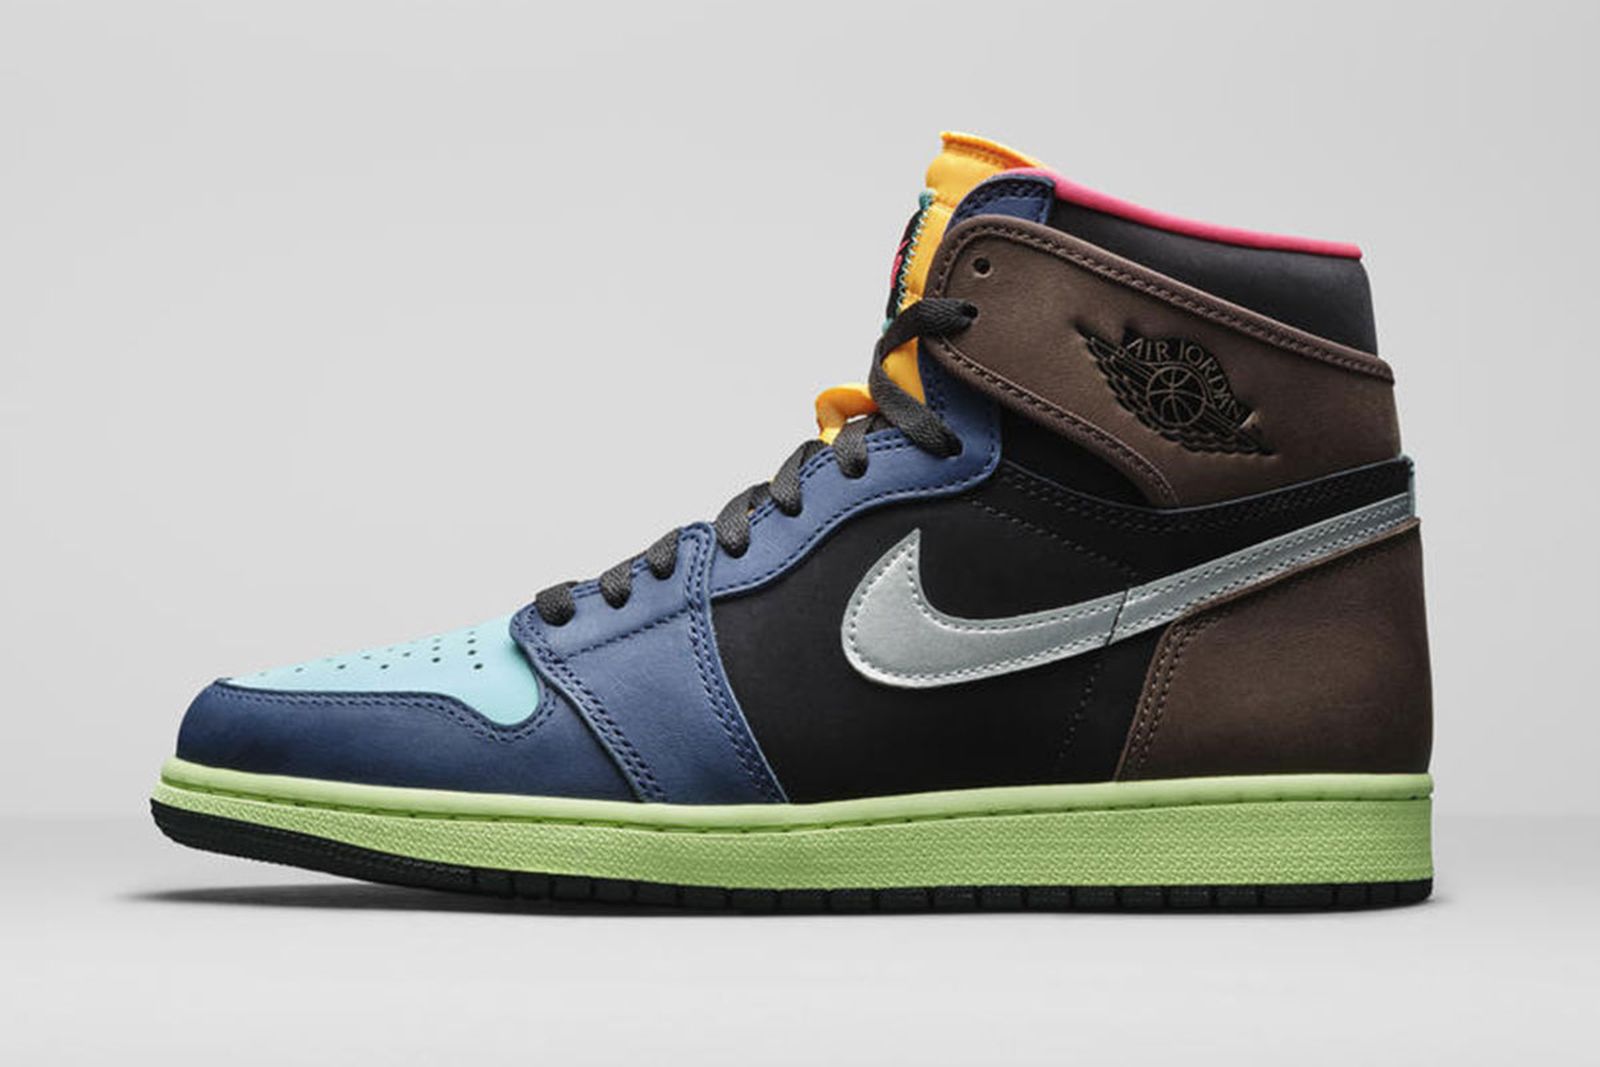 Jordan Brand Fall 2020 sneaker lineup air jordan 1 brown blue green